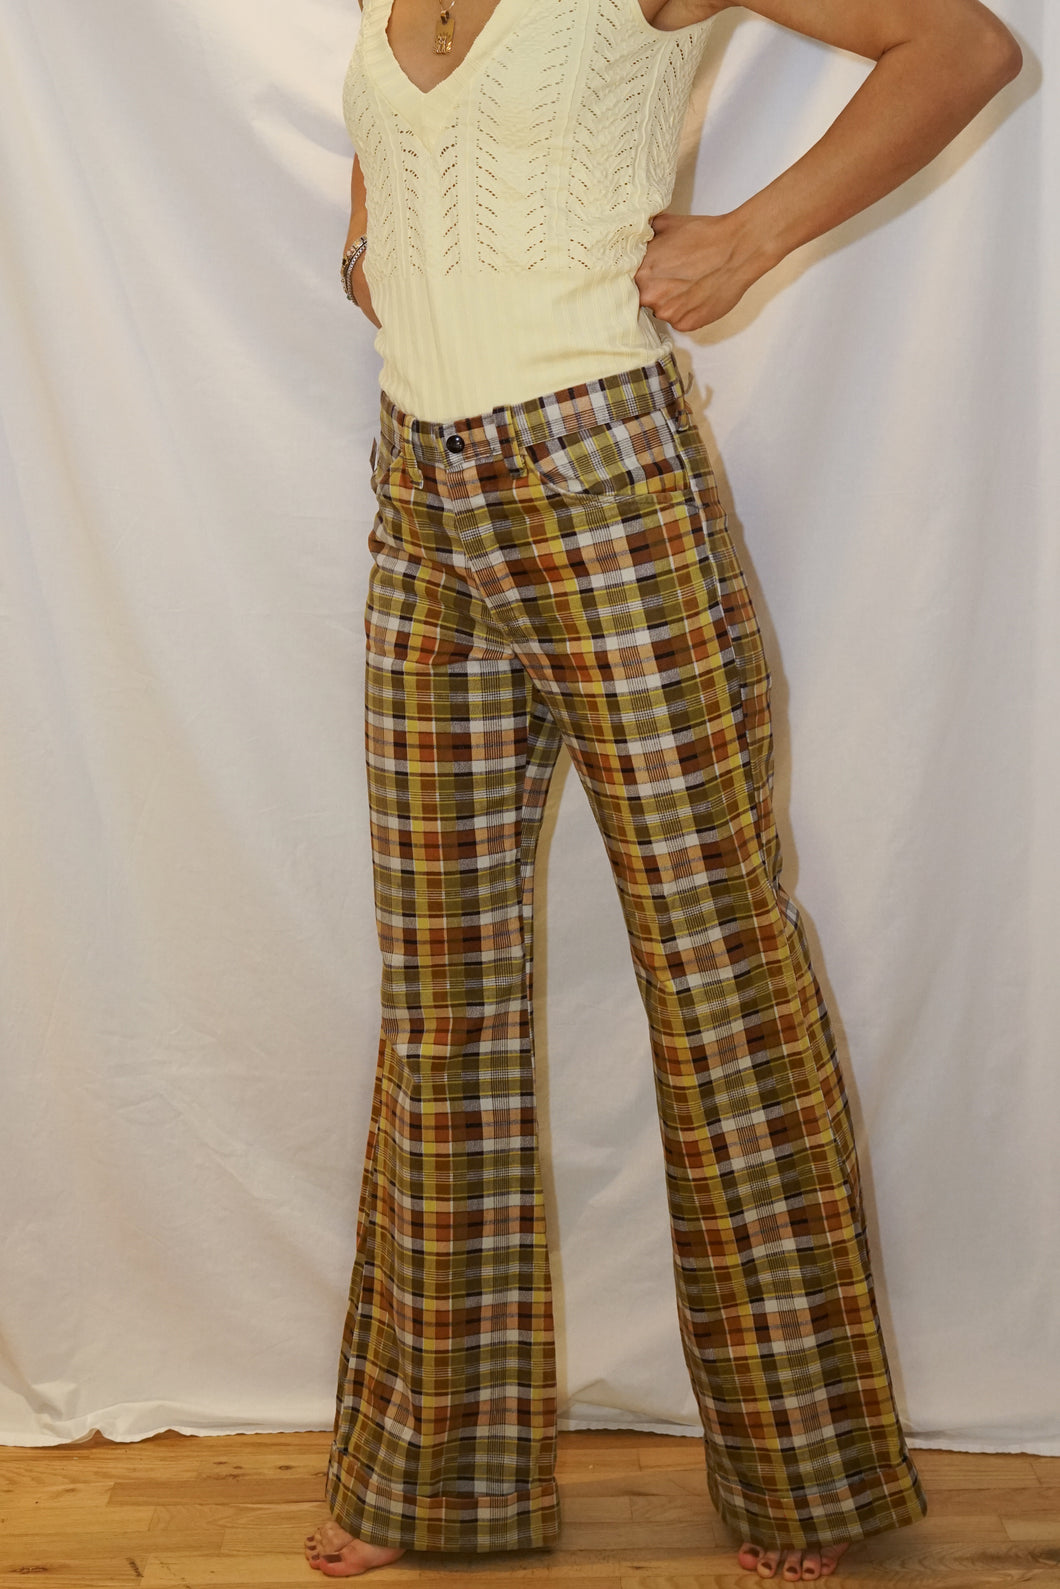 Pantalon éléphant vintage 70s 100% coton carotté jaune et brun taille 27